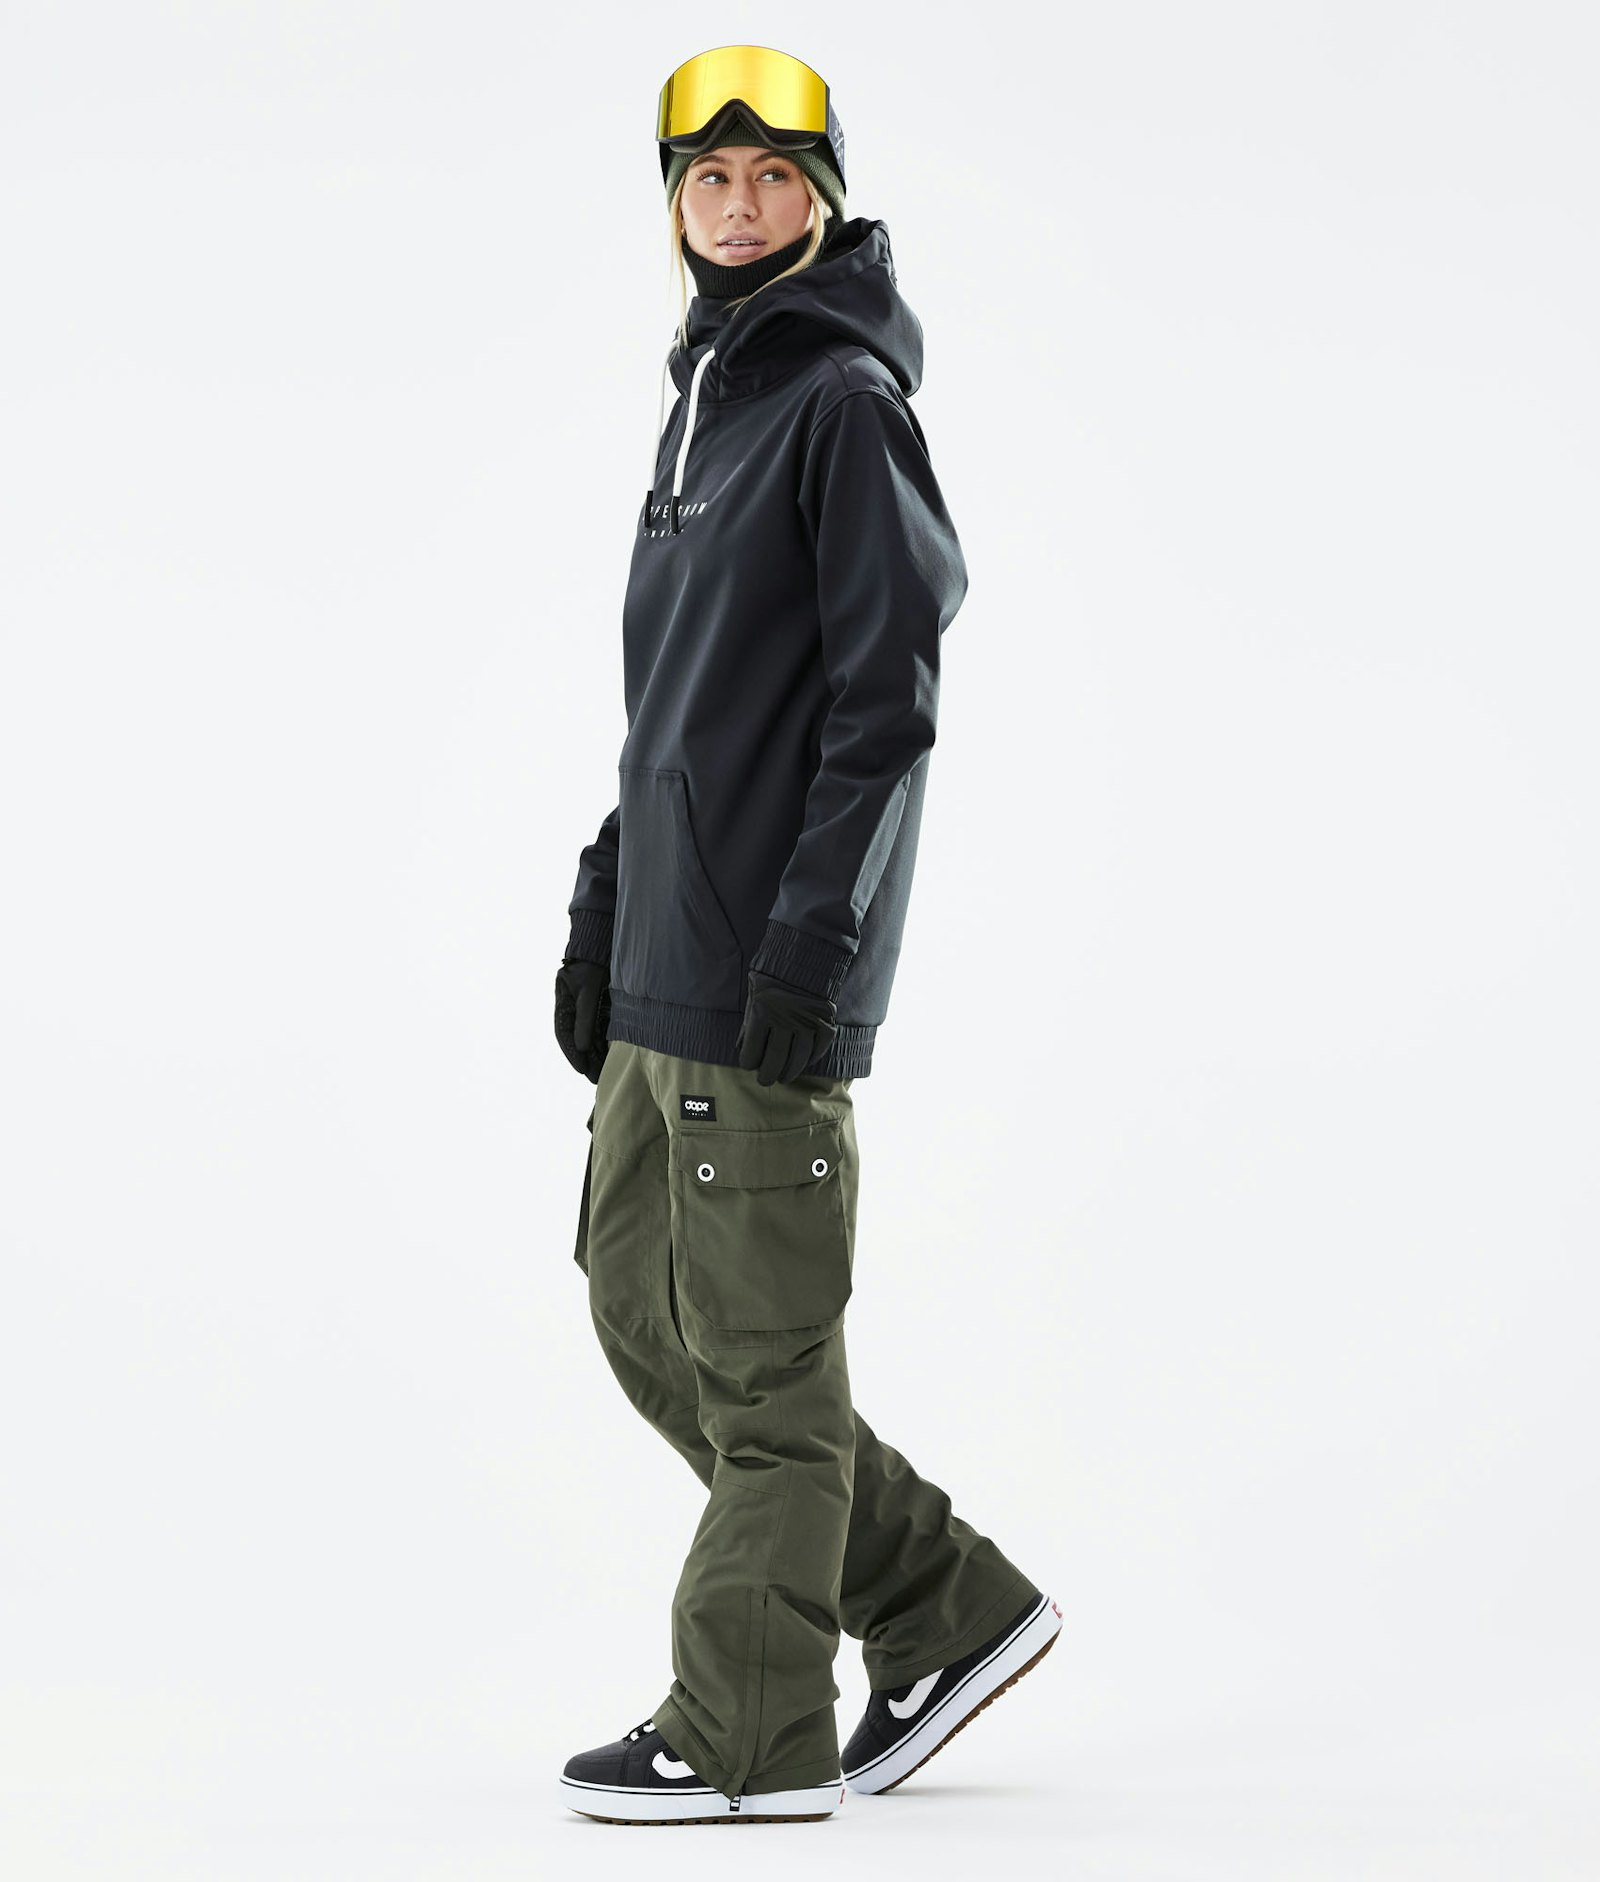 Yeti W 2021 Snowboard Jacket Women Dope Snow Black